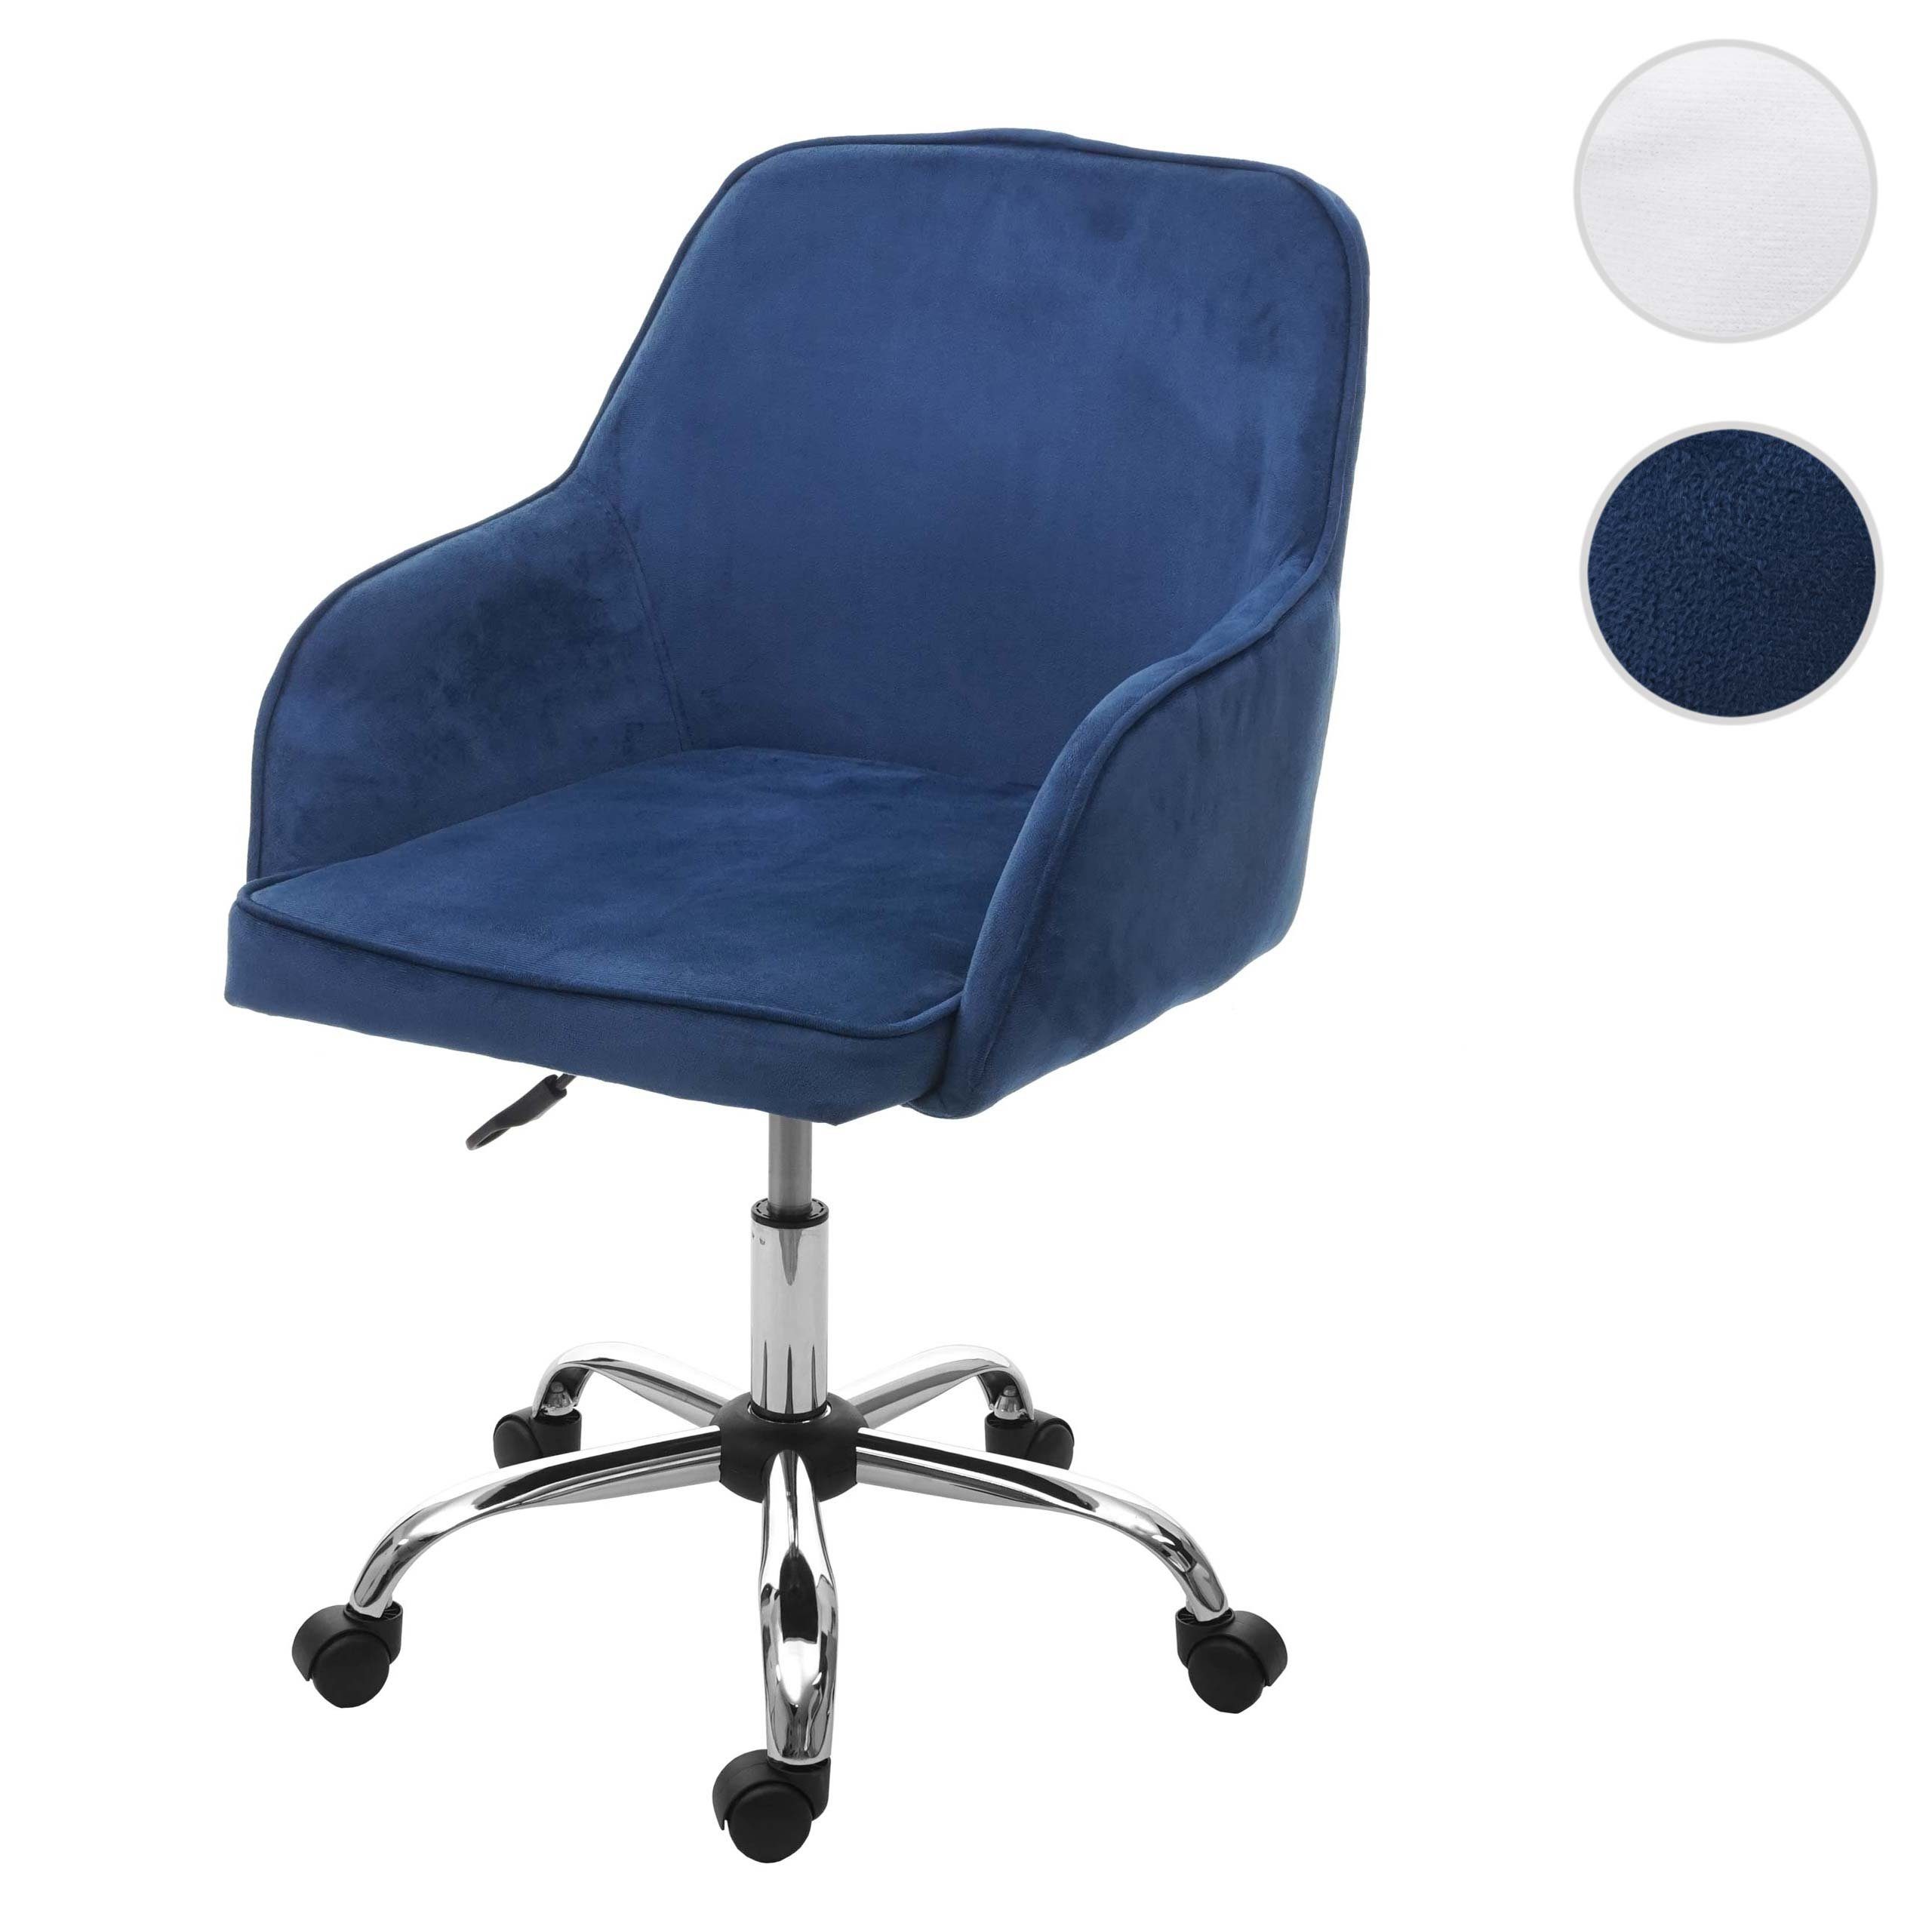 MCW-F82, MCW Schreibtischstuhl Universalrollen, Polsterung Bequeme verstellbar, stufenlos blau 5 Sitzhöhe